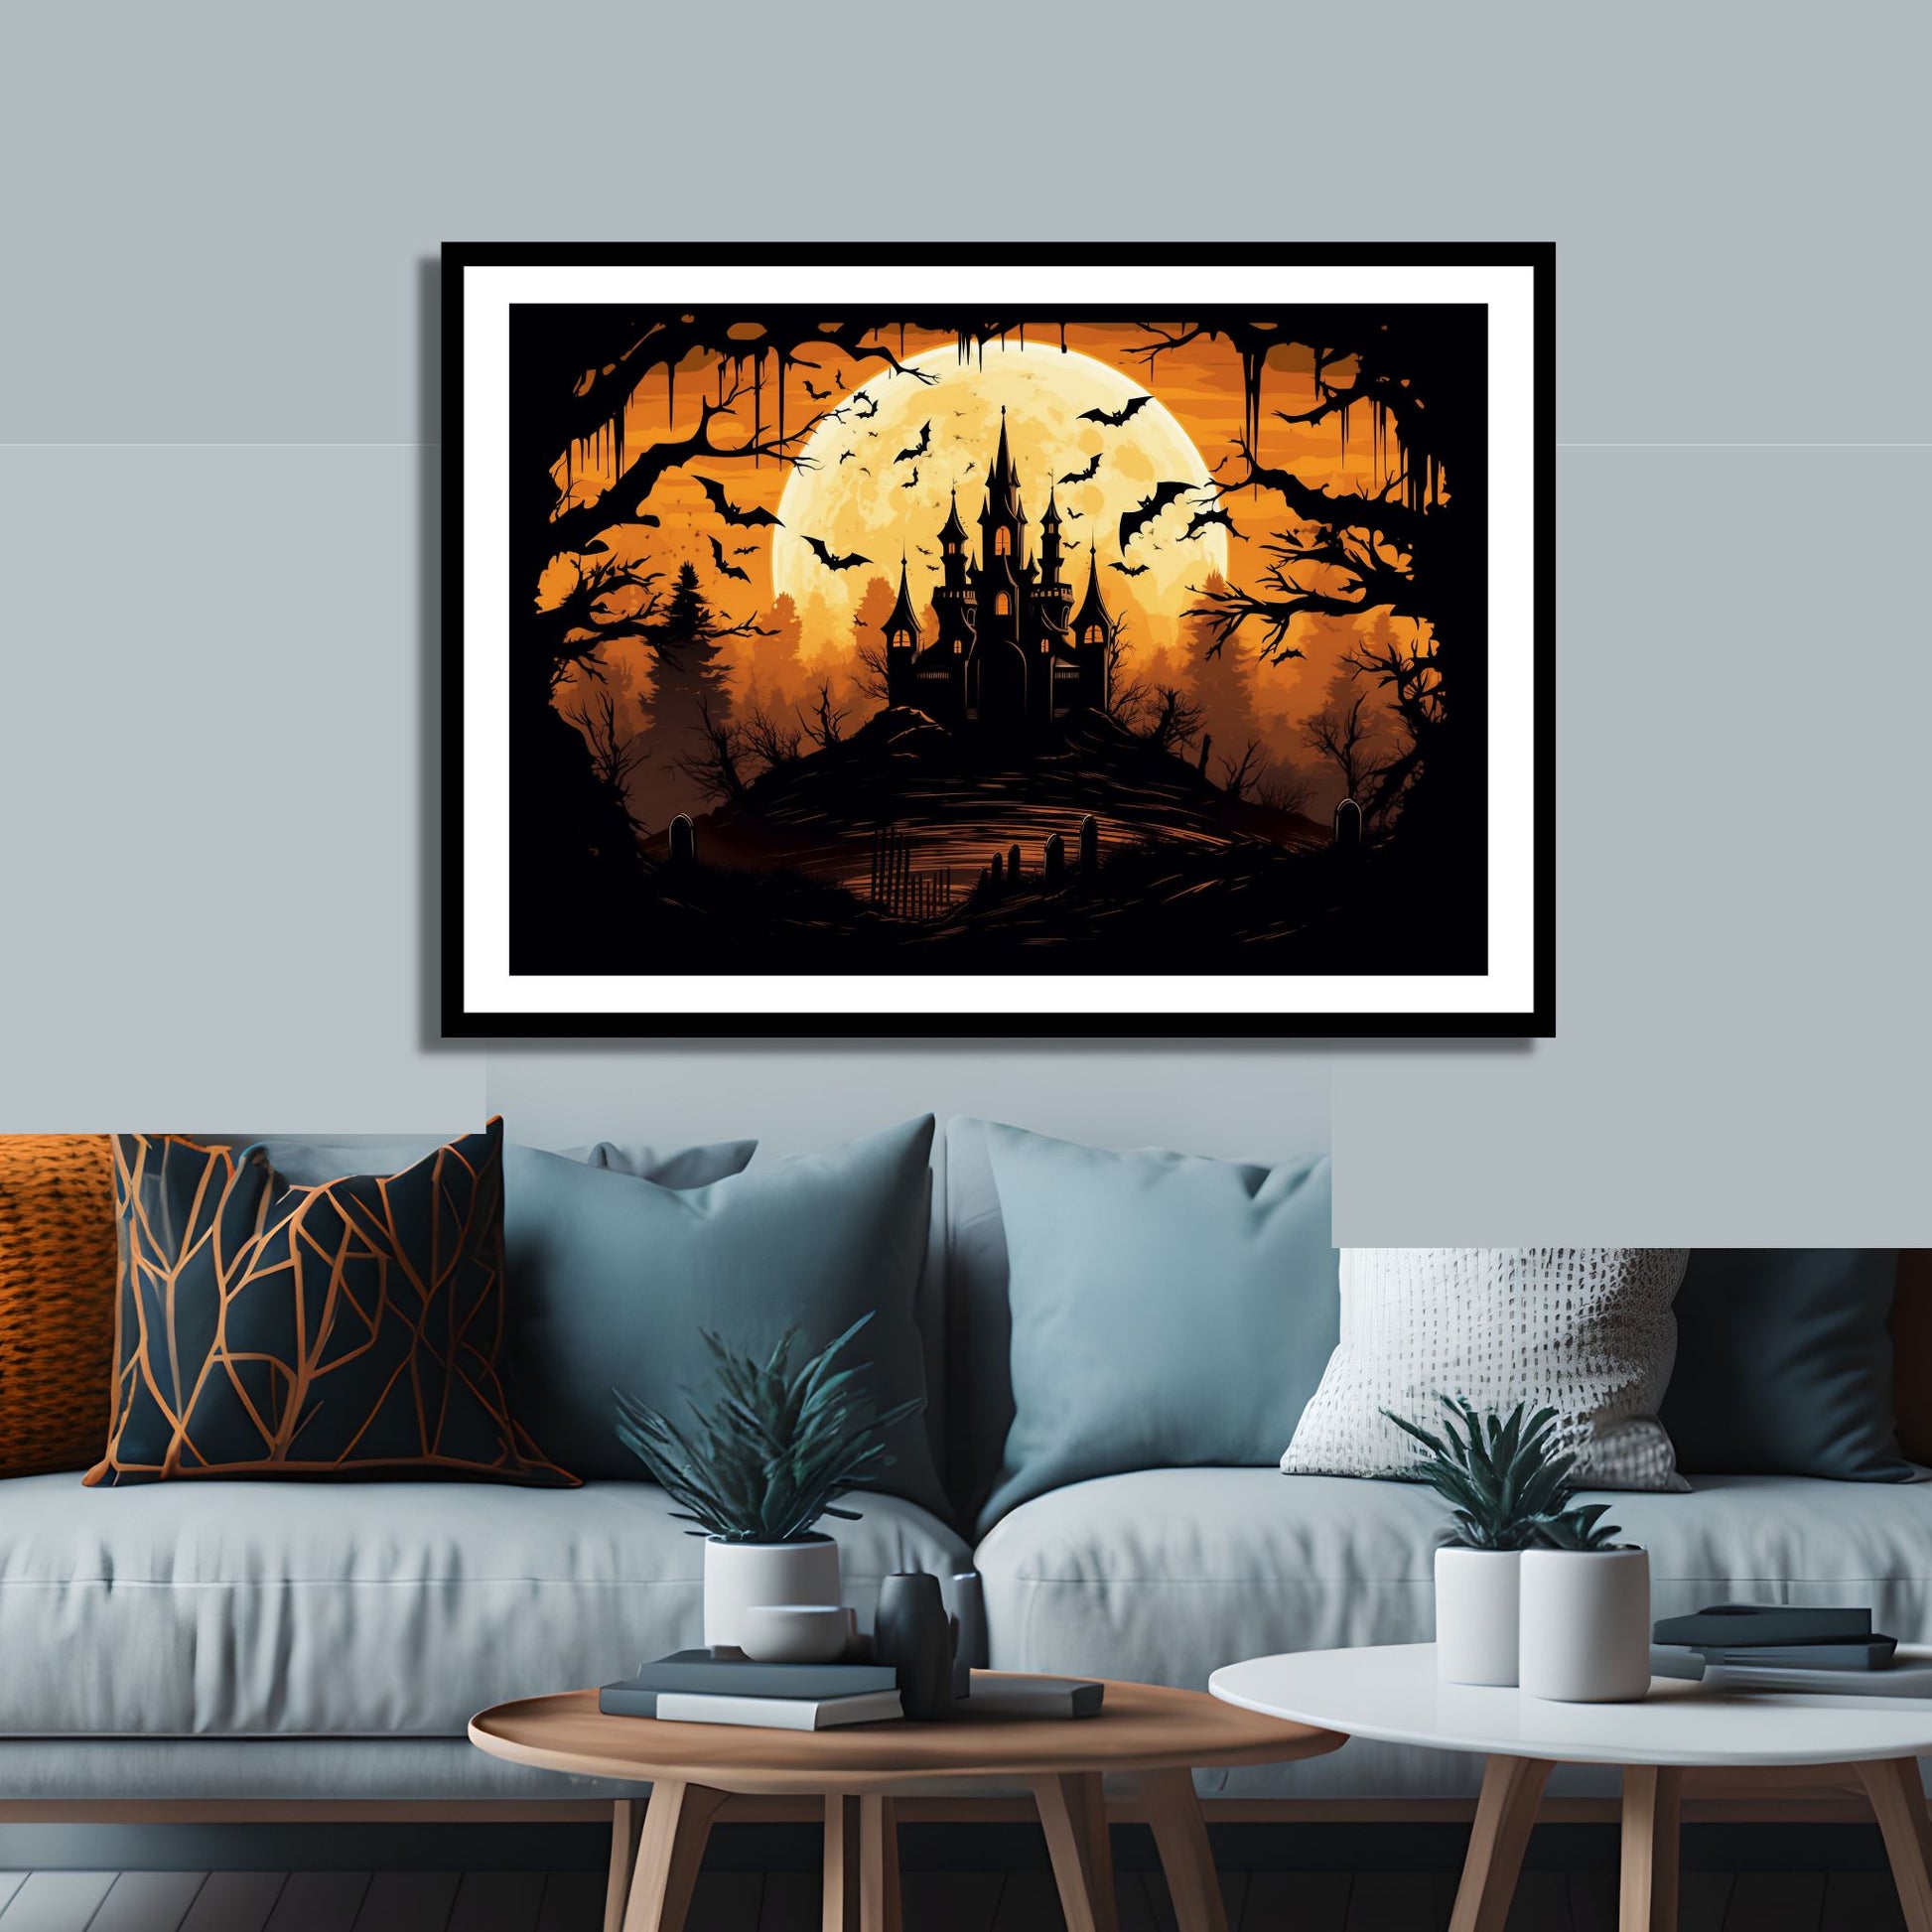 Creepy plakat med motiv av Halloween slott ved fullmåne. Motivet viser nattmørke med flaggermus og lys i vinduene. Bildet som har en hvit kant, er rammet inn i sort ramme og henger på en vegg over en sofa.